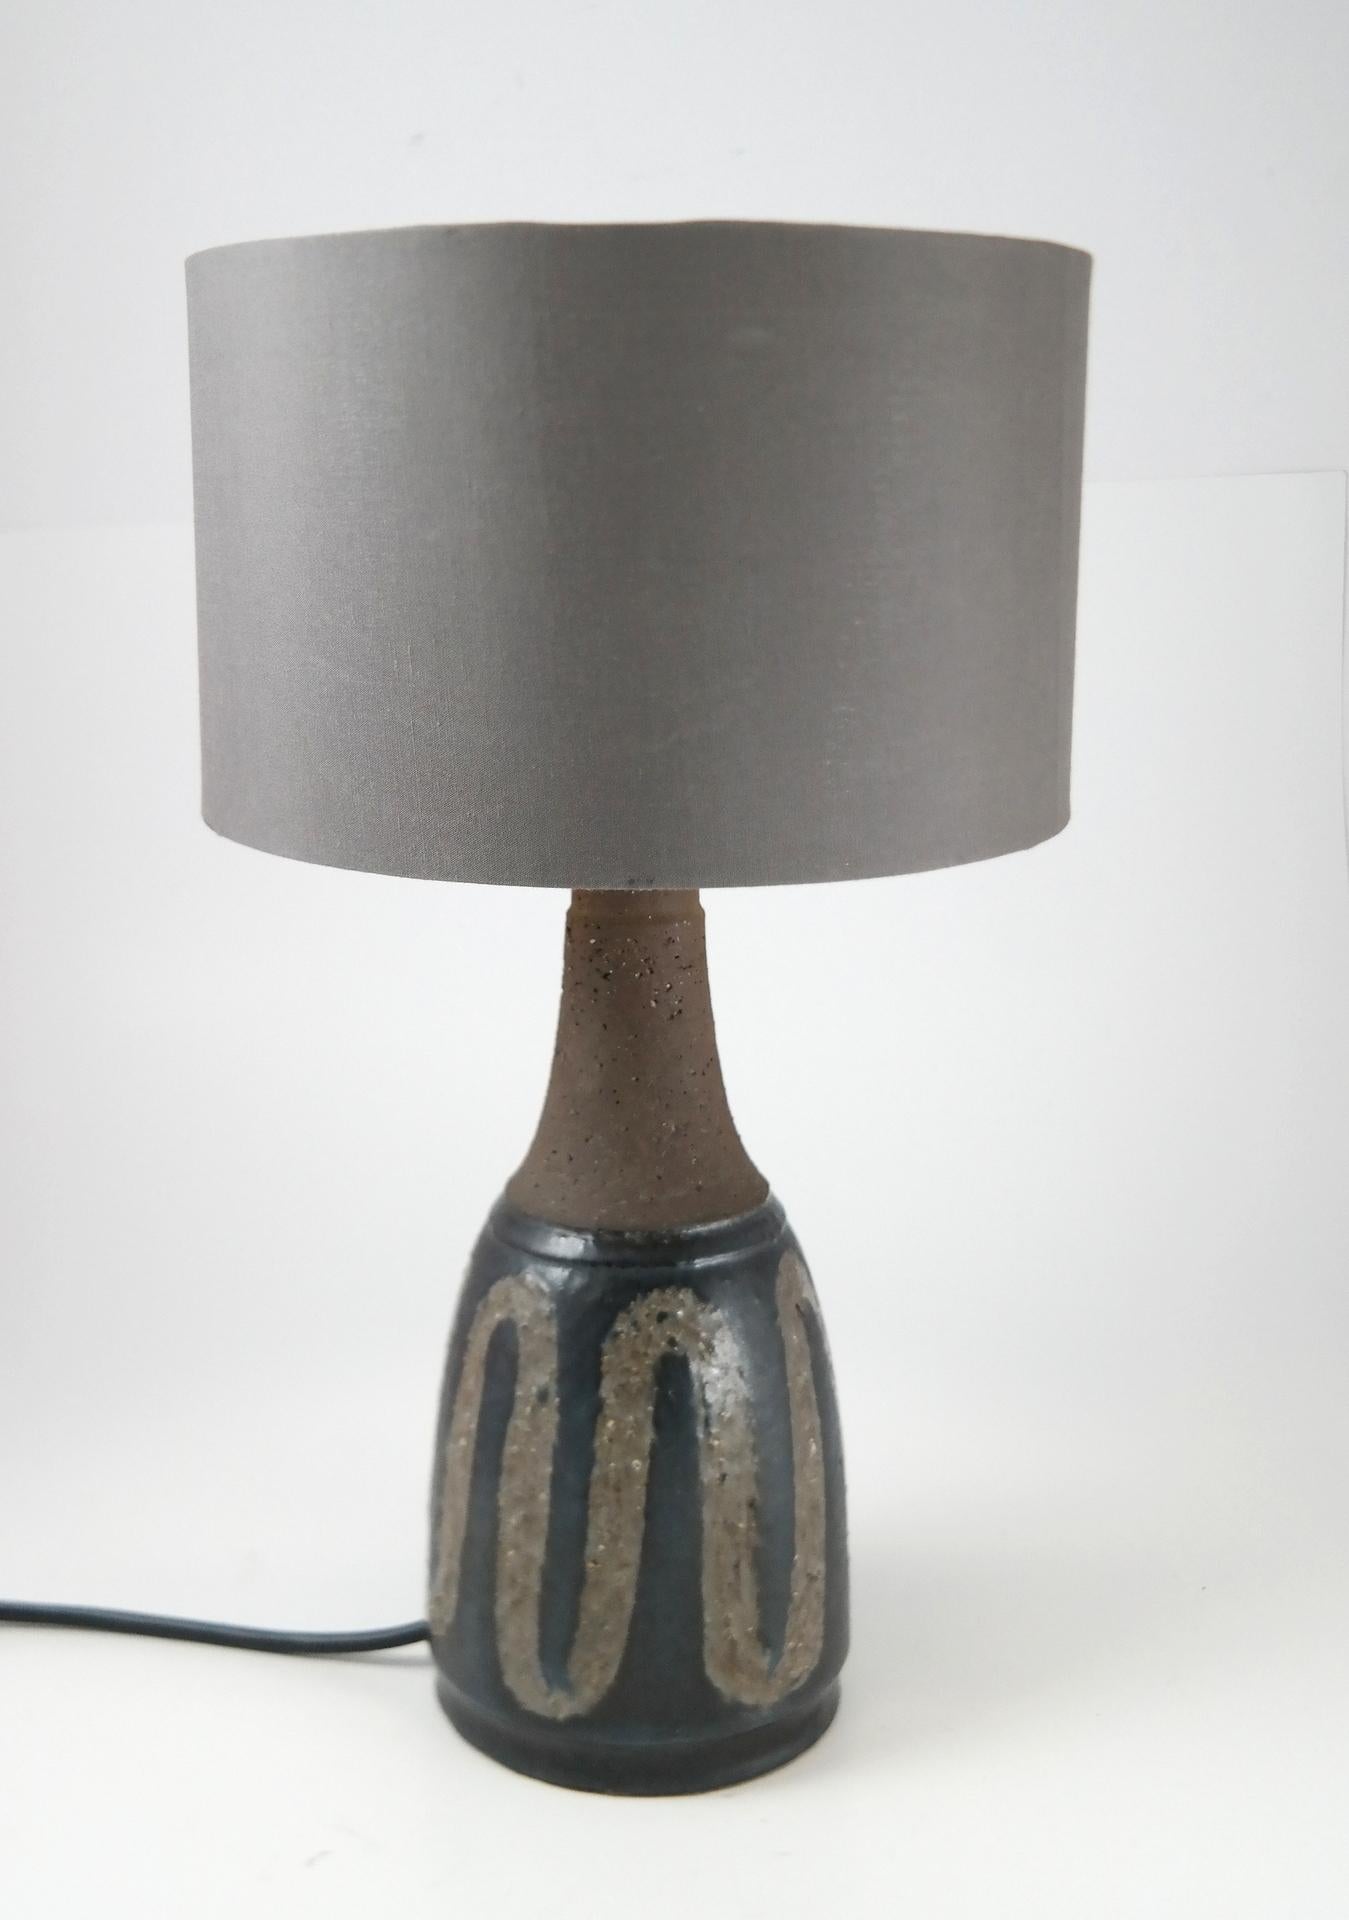 Midcentury Danish ceramic table lamp, 1970s.